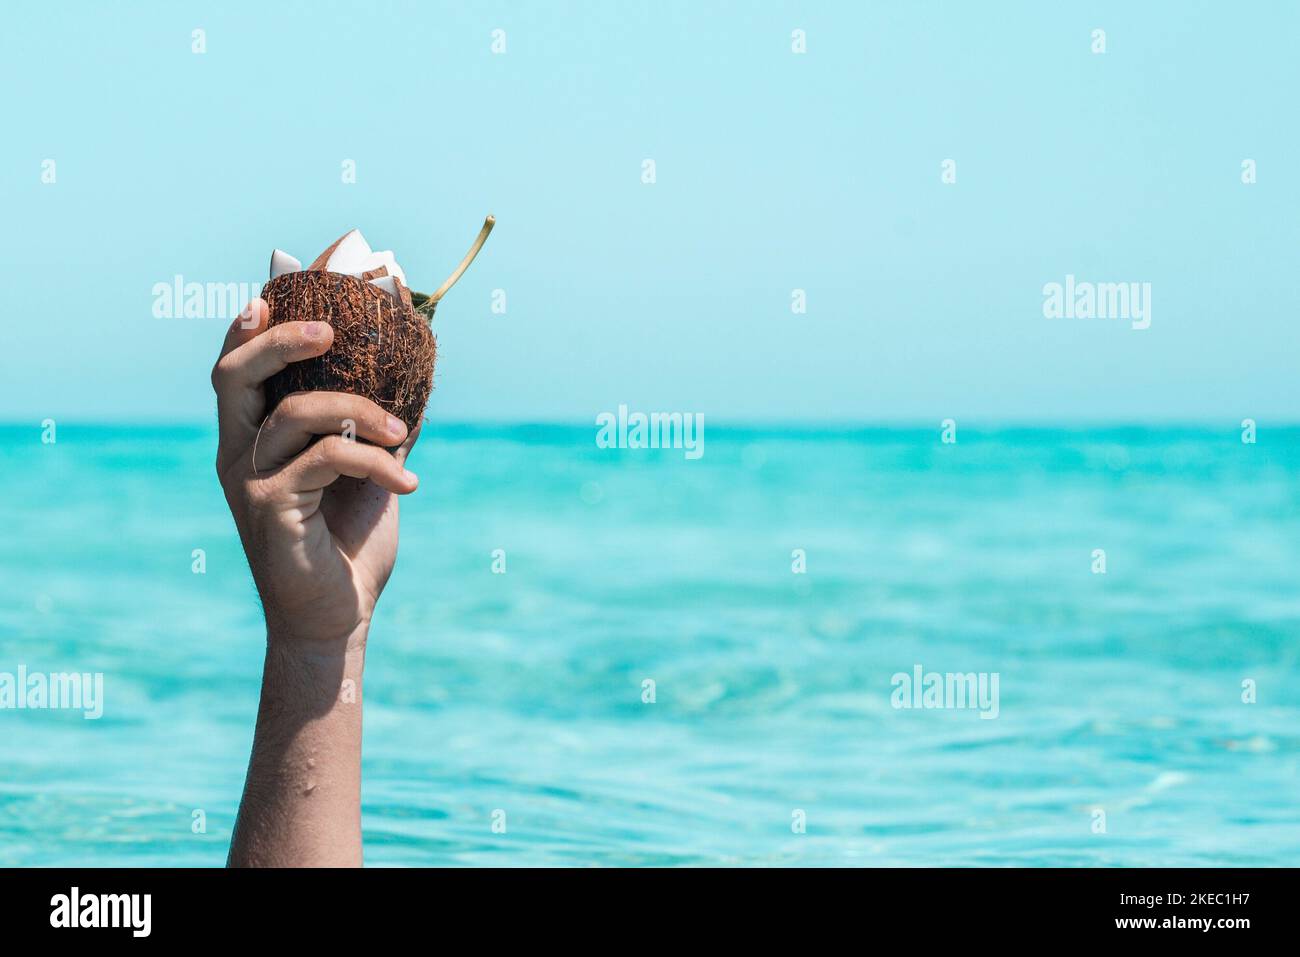 Nahaufnahme einer nicht erkennbaren Person, die eine halbe Kokosnussschale mit Scheiben auf Kokosnuss in sich gegen Meer und Himmel hält. Nasse Hand im Sommer mit Kokosnussschale. Erhobene Hand hält Kokosnuss gegen das Meer Stockfoto